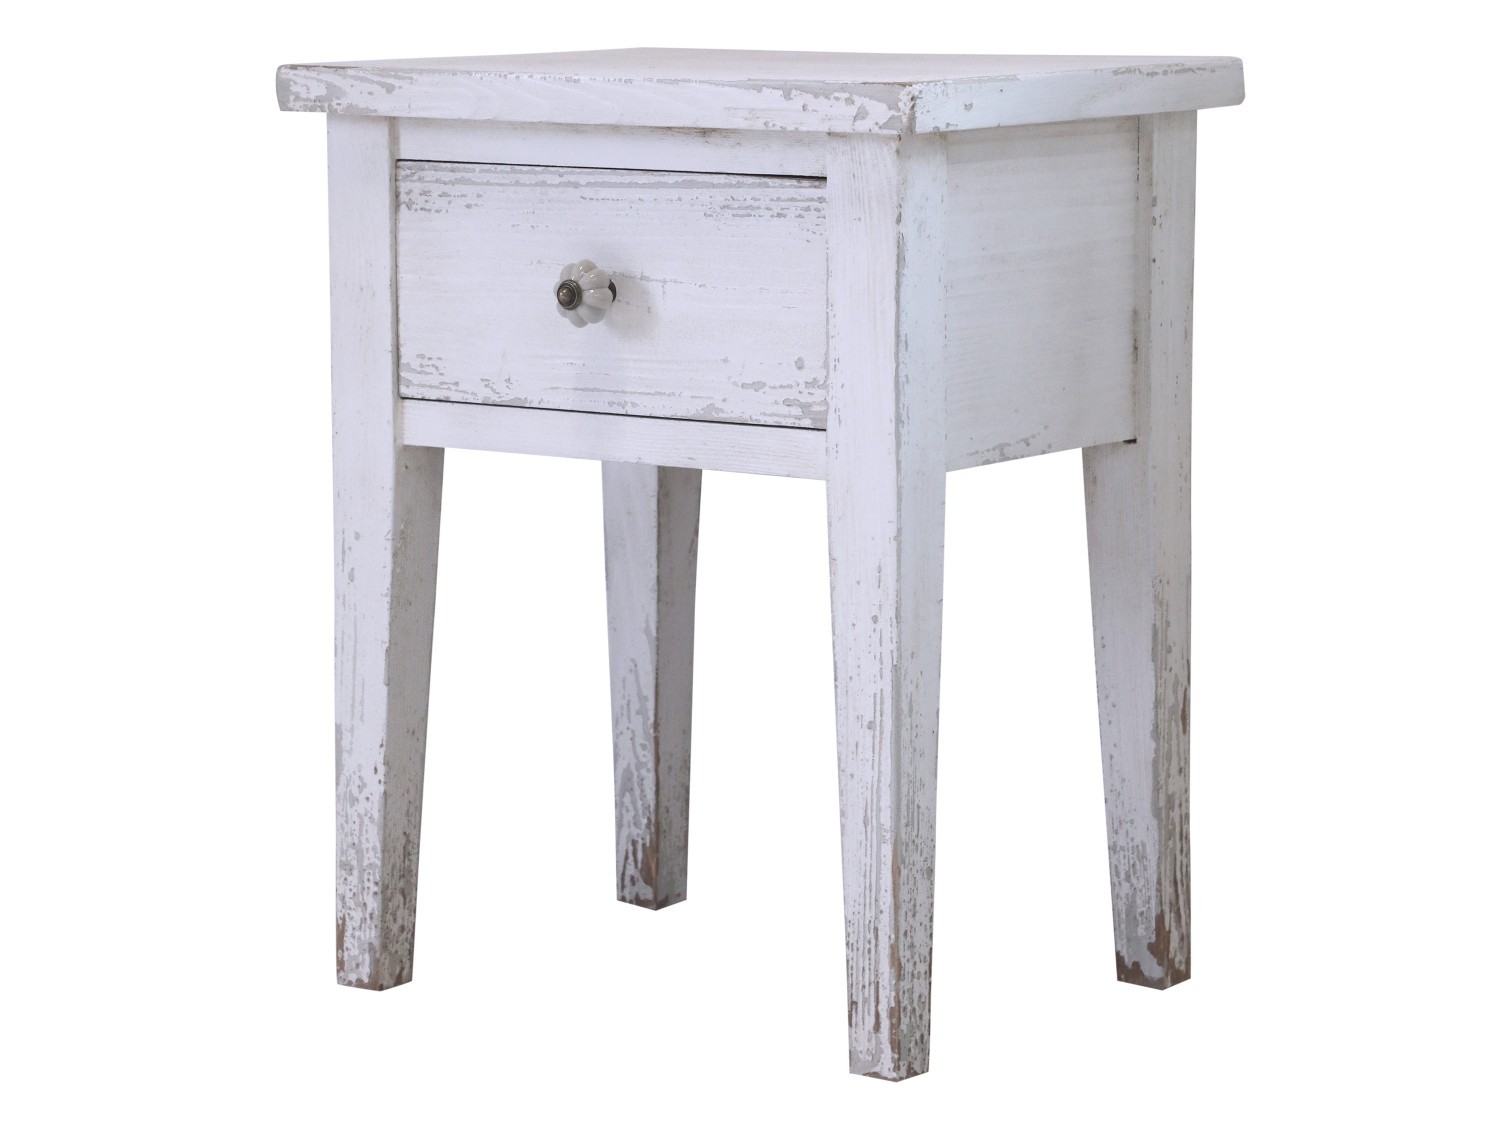 Bílý dřevěný retro noční stolek se šuplíkem Fabien - 42*32*52 cm Chic Antique